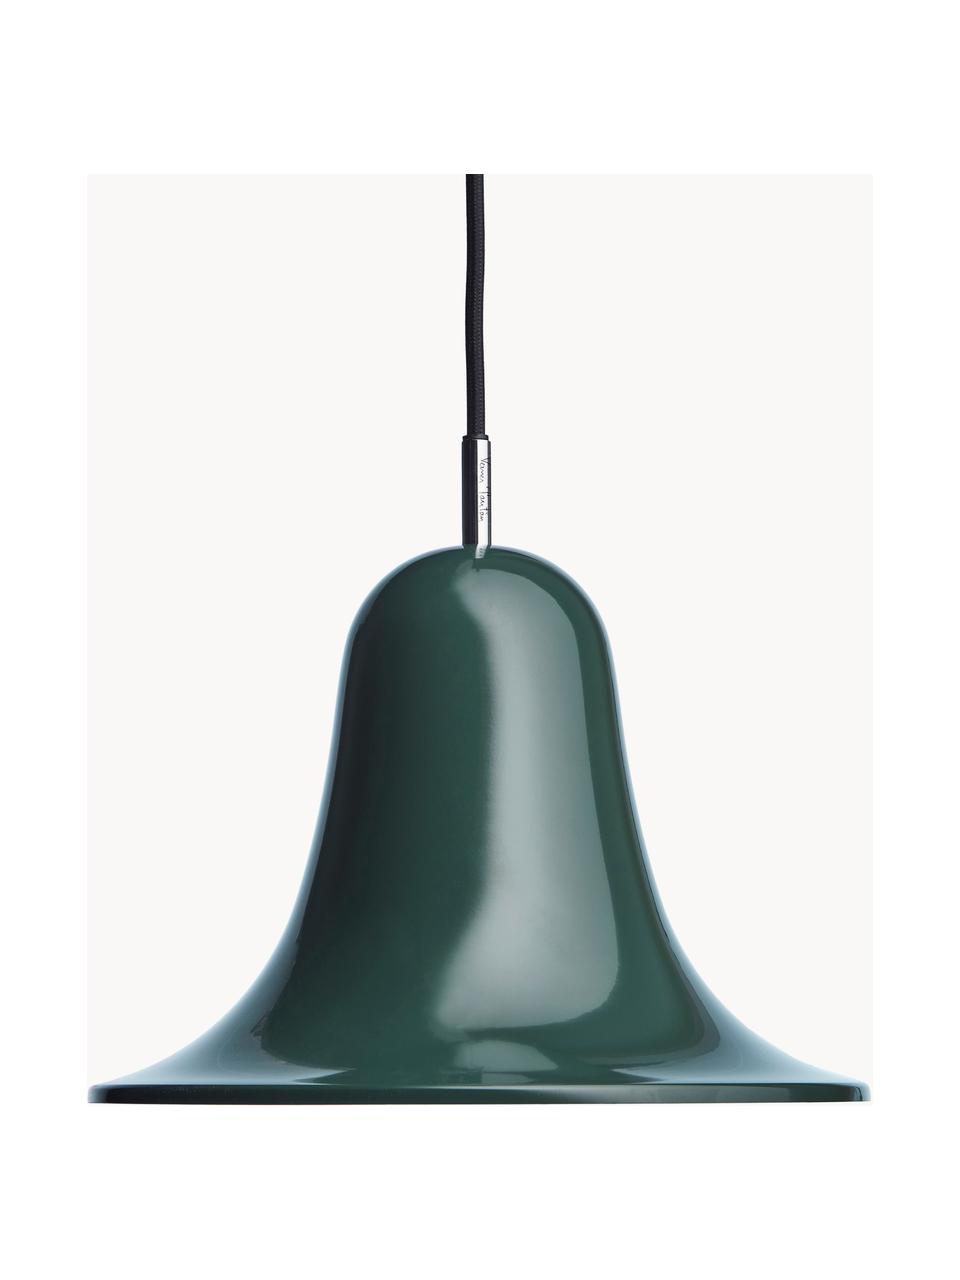 Lámpara de techo pequeña Pantop, Pantalla: metal recubierto, Cable: cubierto en tela, Verde oscuro, Ø 23 x Al 17 cm